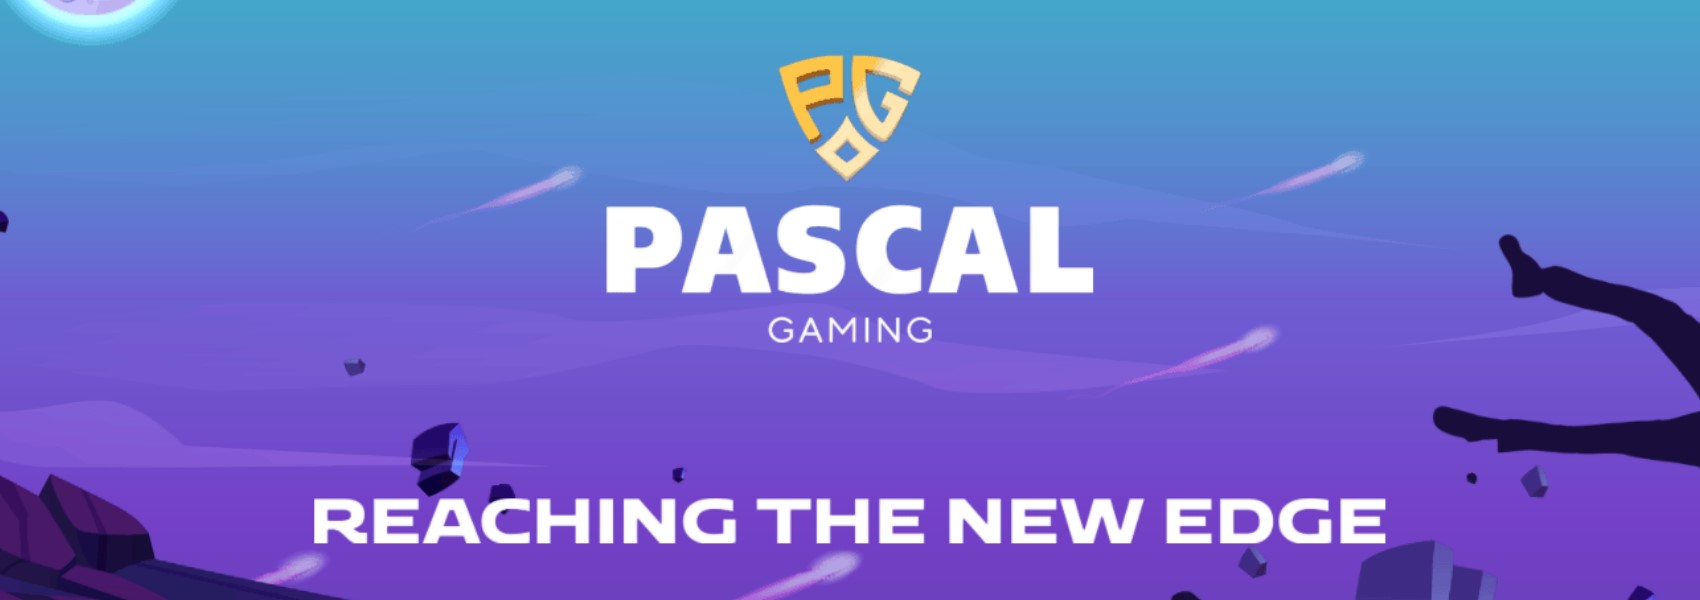 Nhà cung cấp trò chơi Pascal Gaming